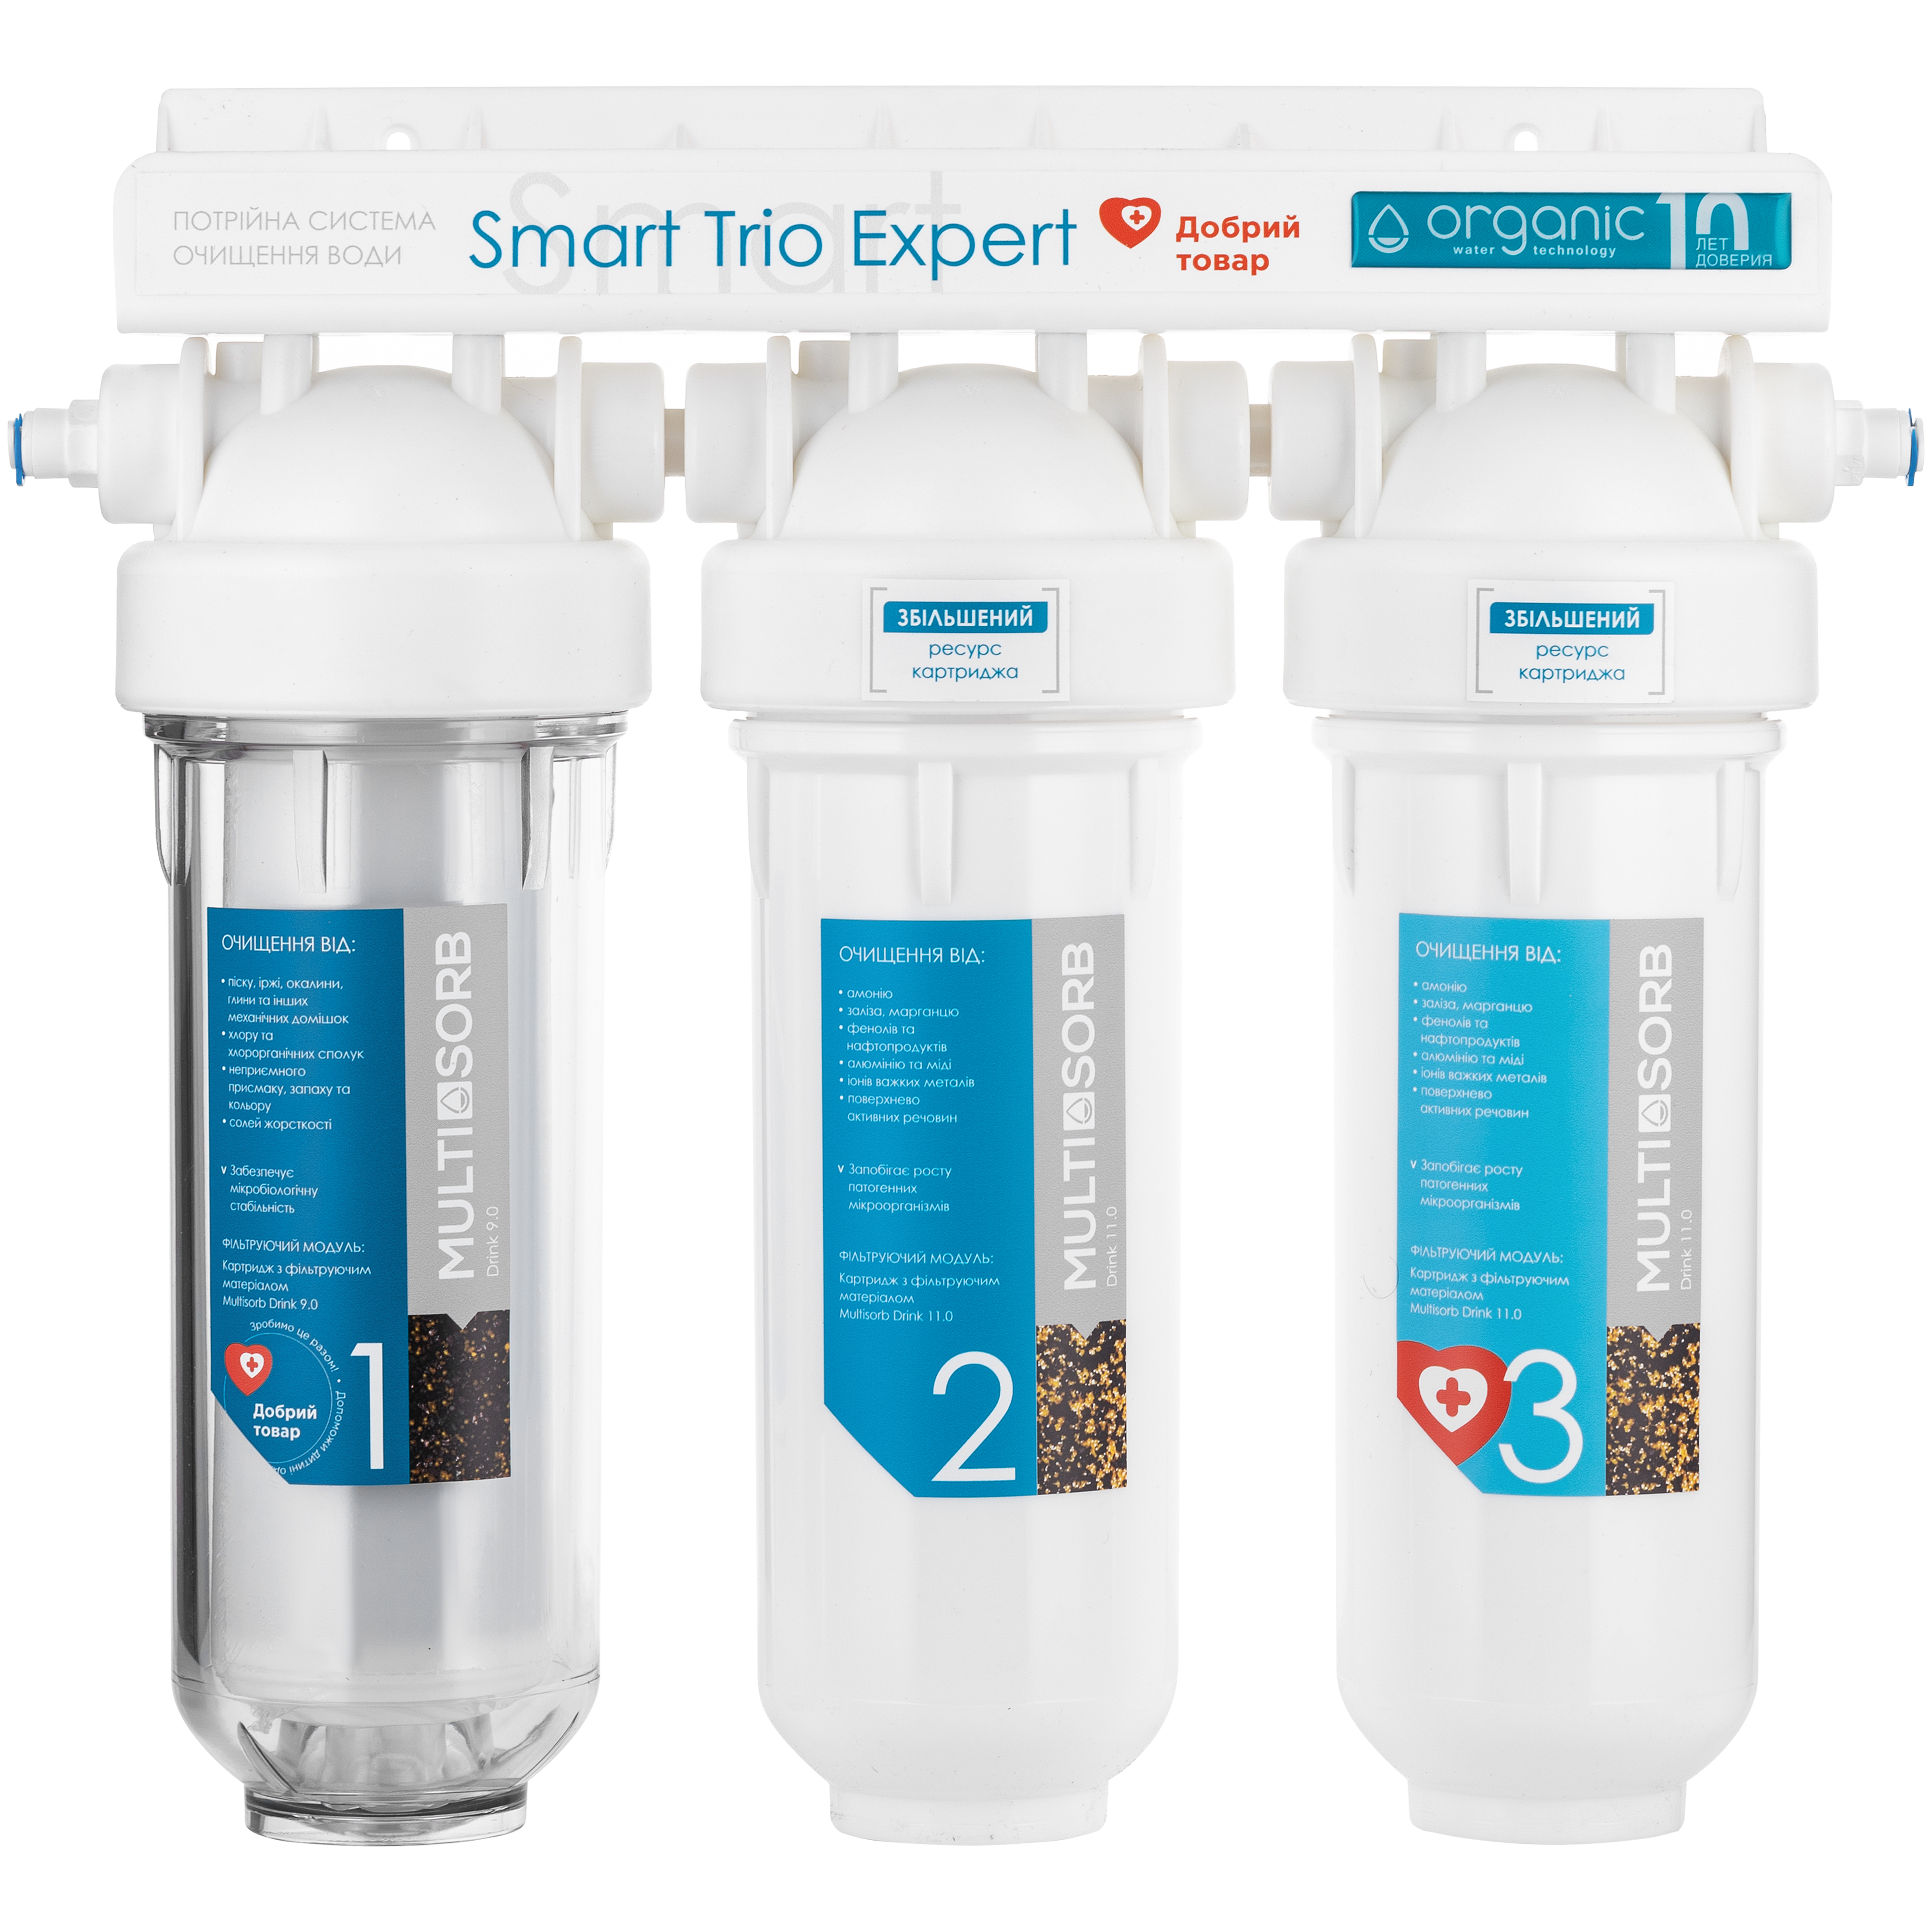 Характеристики фильтр для воды Organic Smart TRIO EXPERT